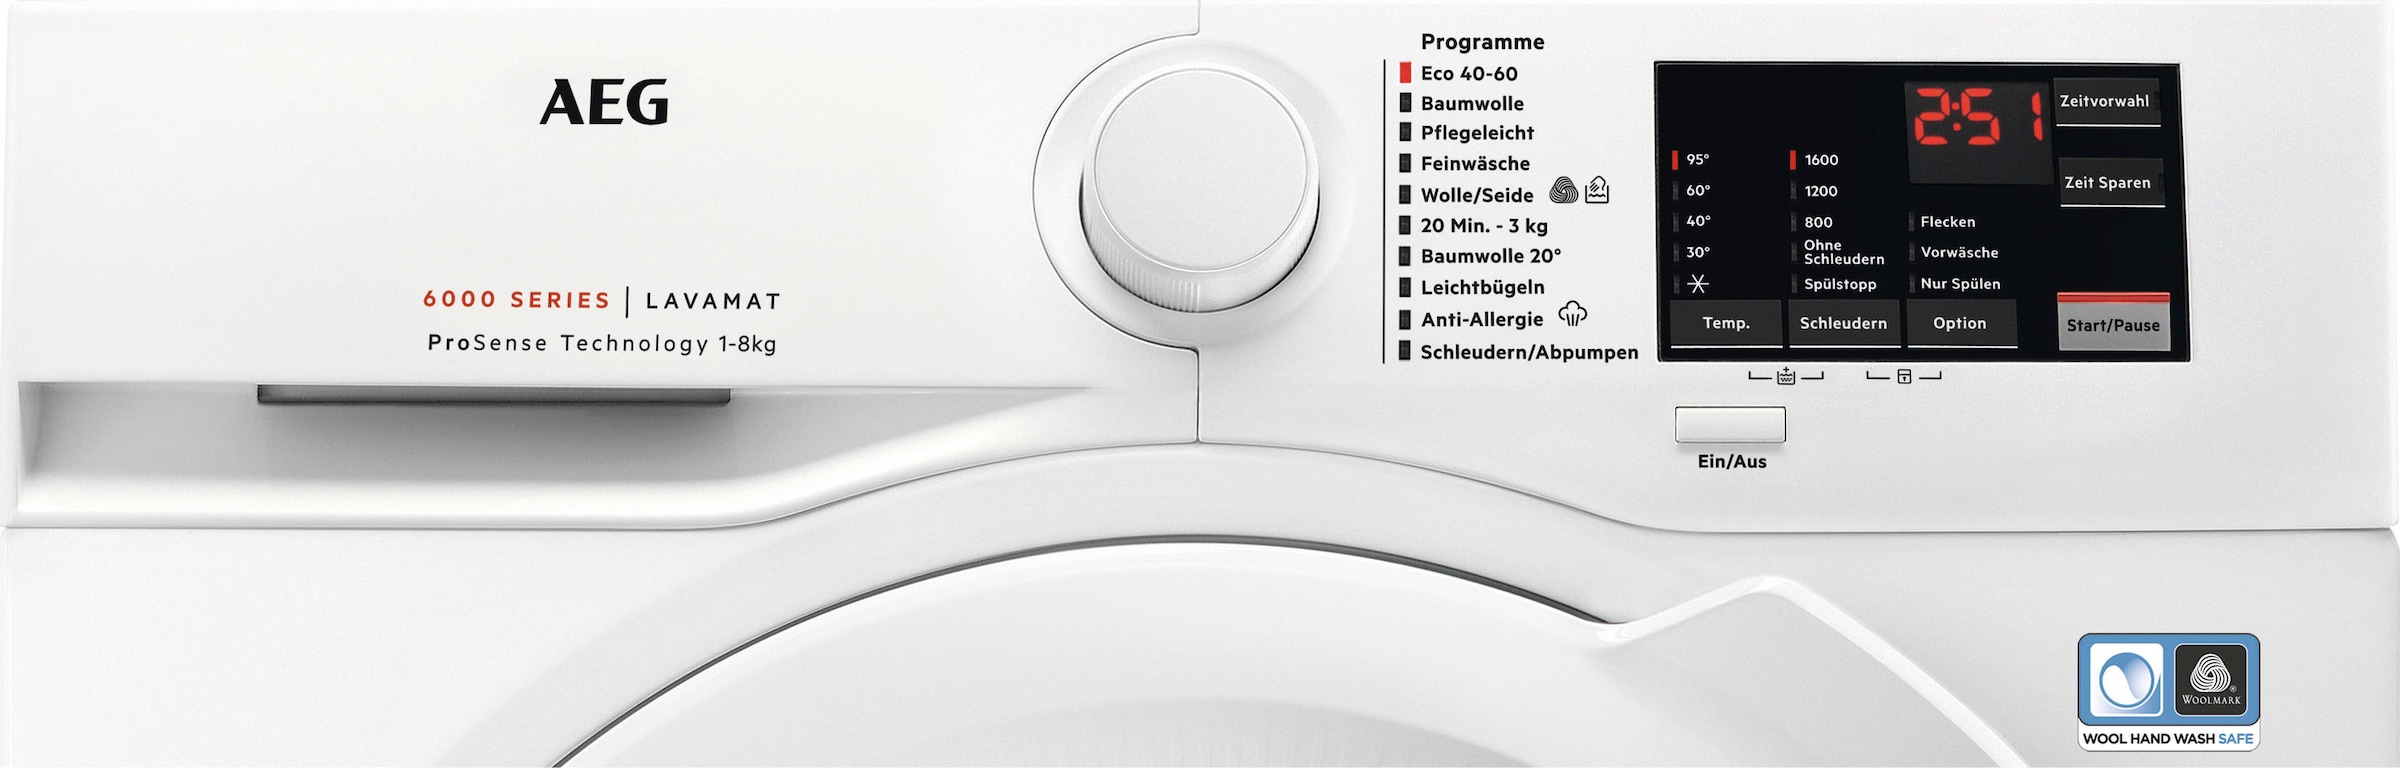 AEG Waschmaschine »L6FA68FL«, Garantie 3 mit Dampf mit Programm L6FA68FL, 8 1600 Hygiene-/ kg, Jahren ProSense-Technologie, U/min, mit Serie 6000 XXL Anti-Allergie